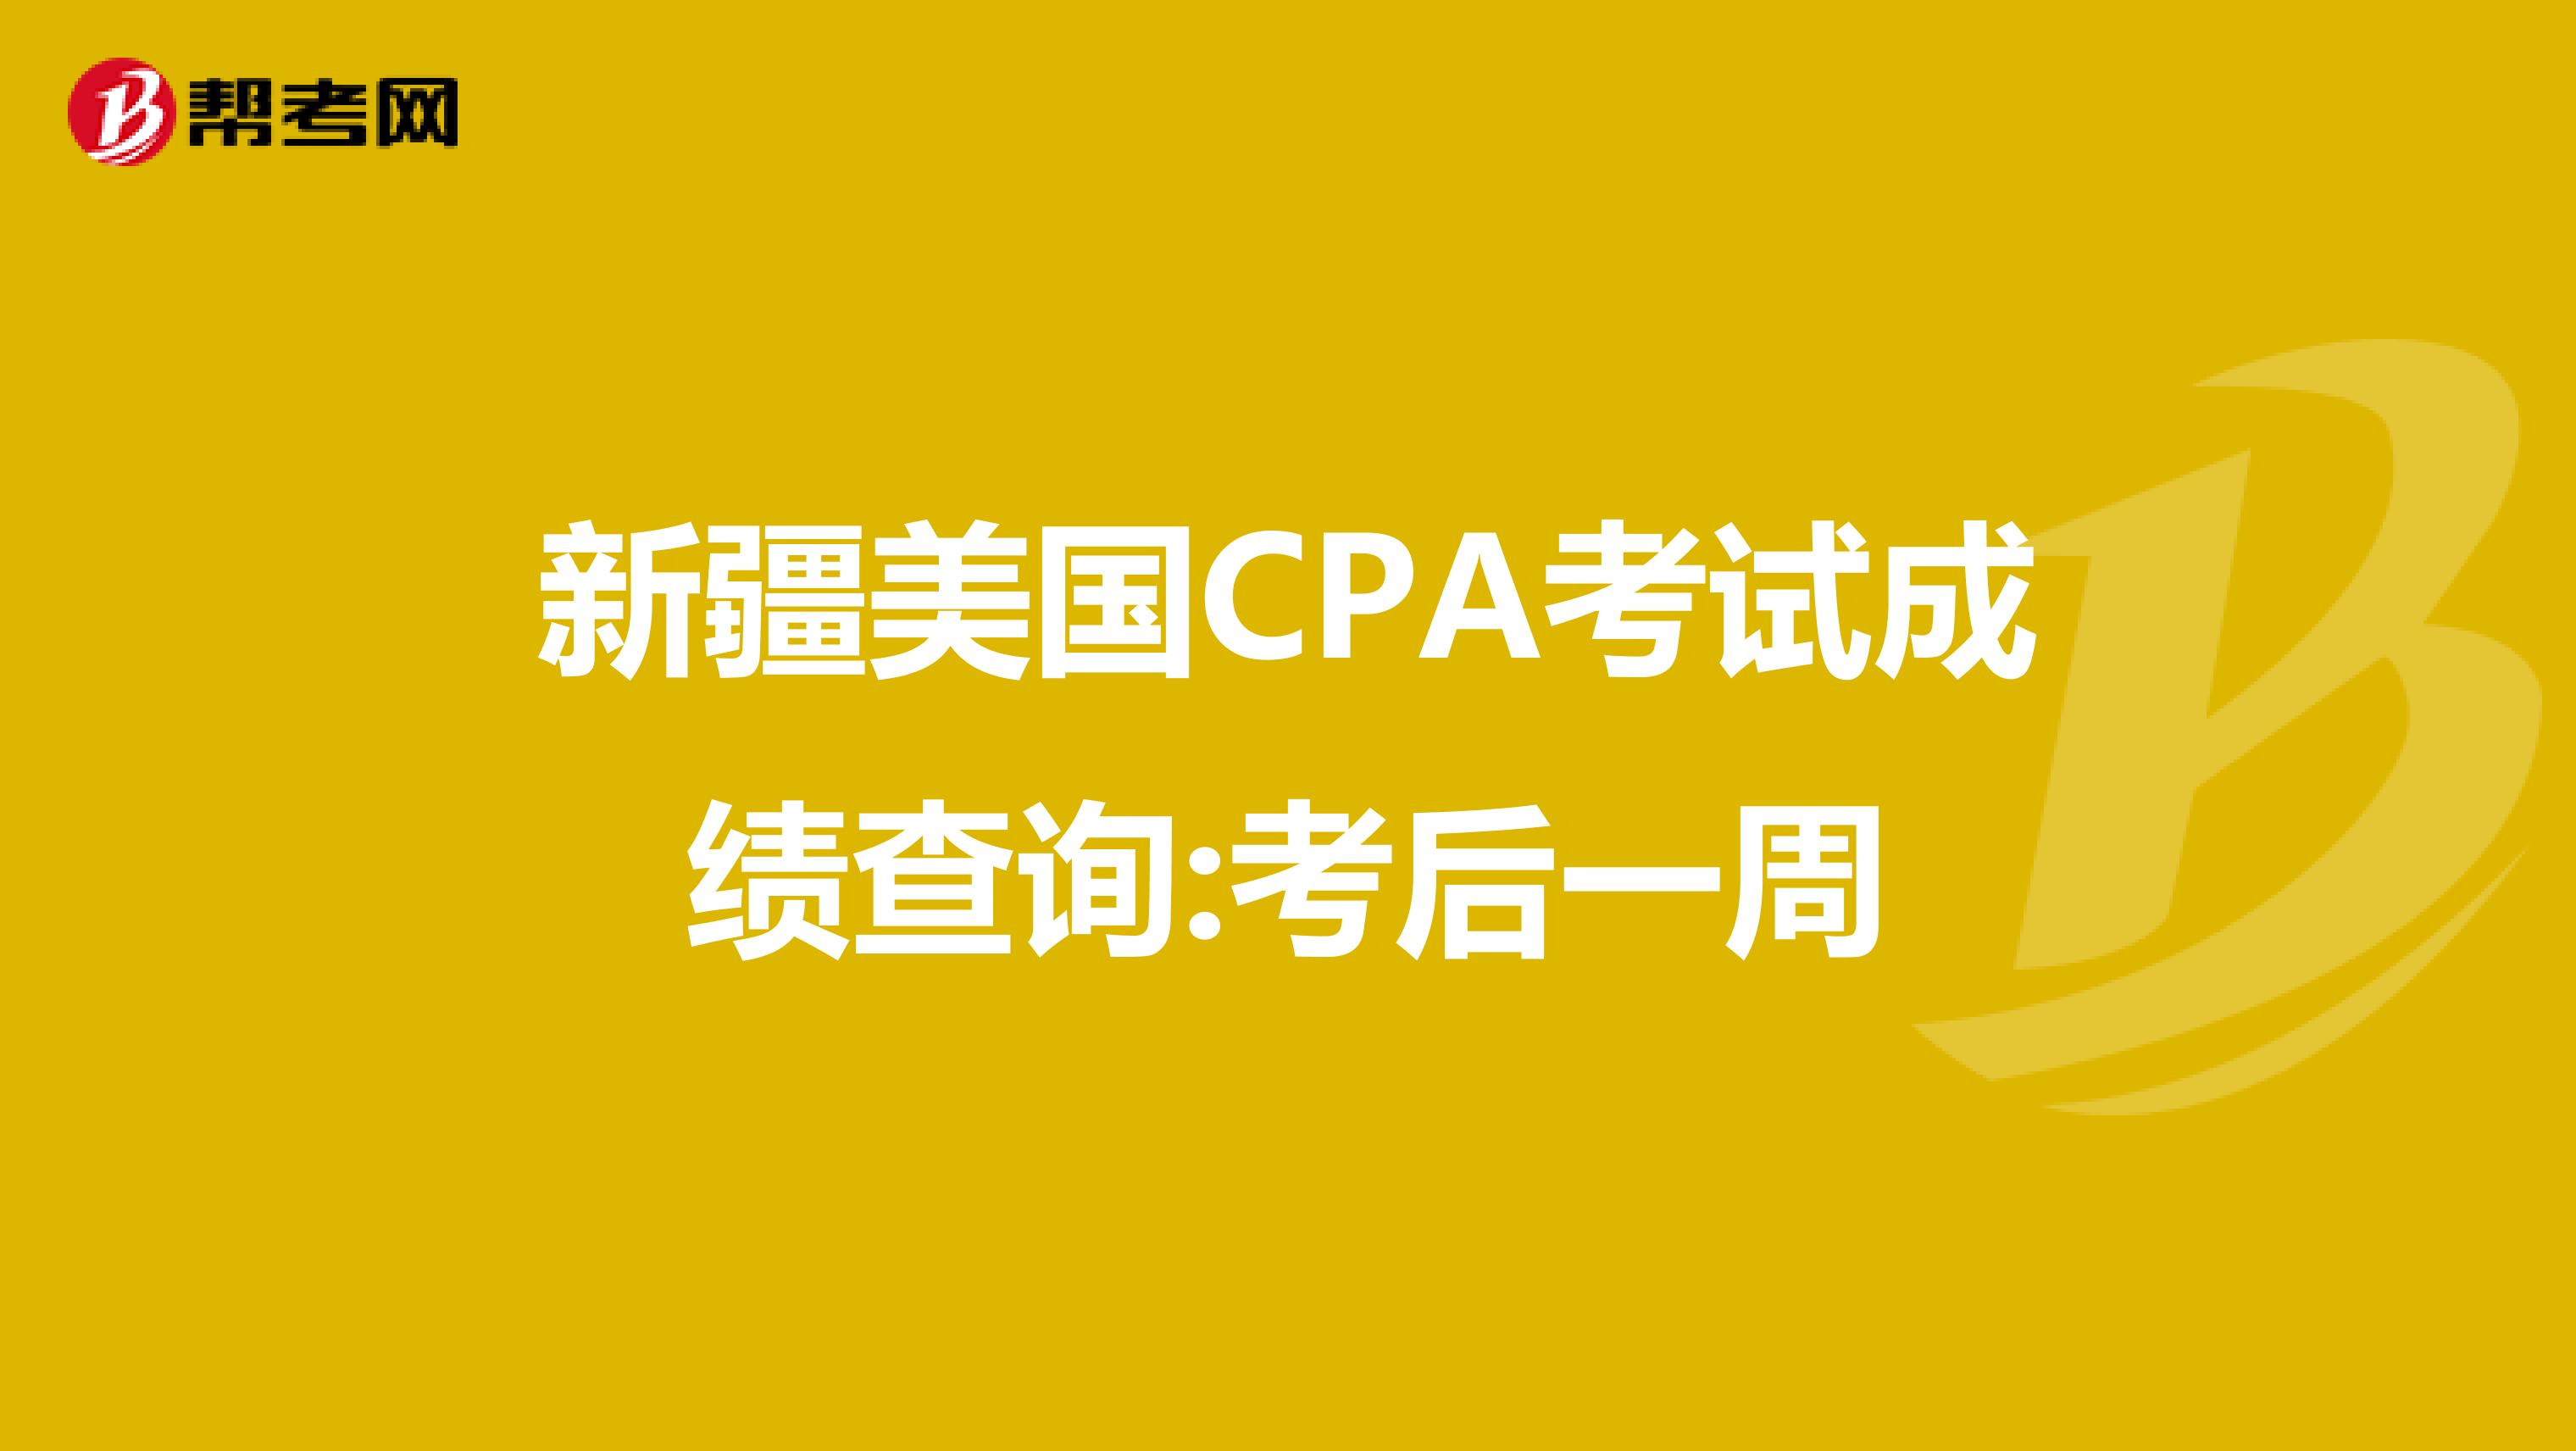 新疆美国CPA考试成绩查询:考后一周